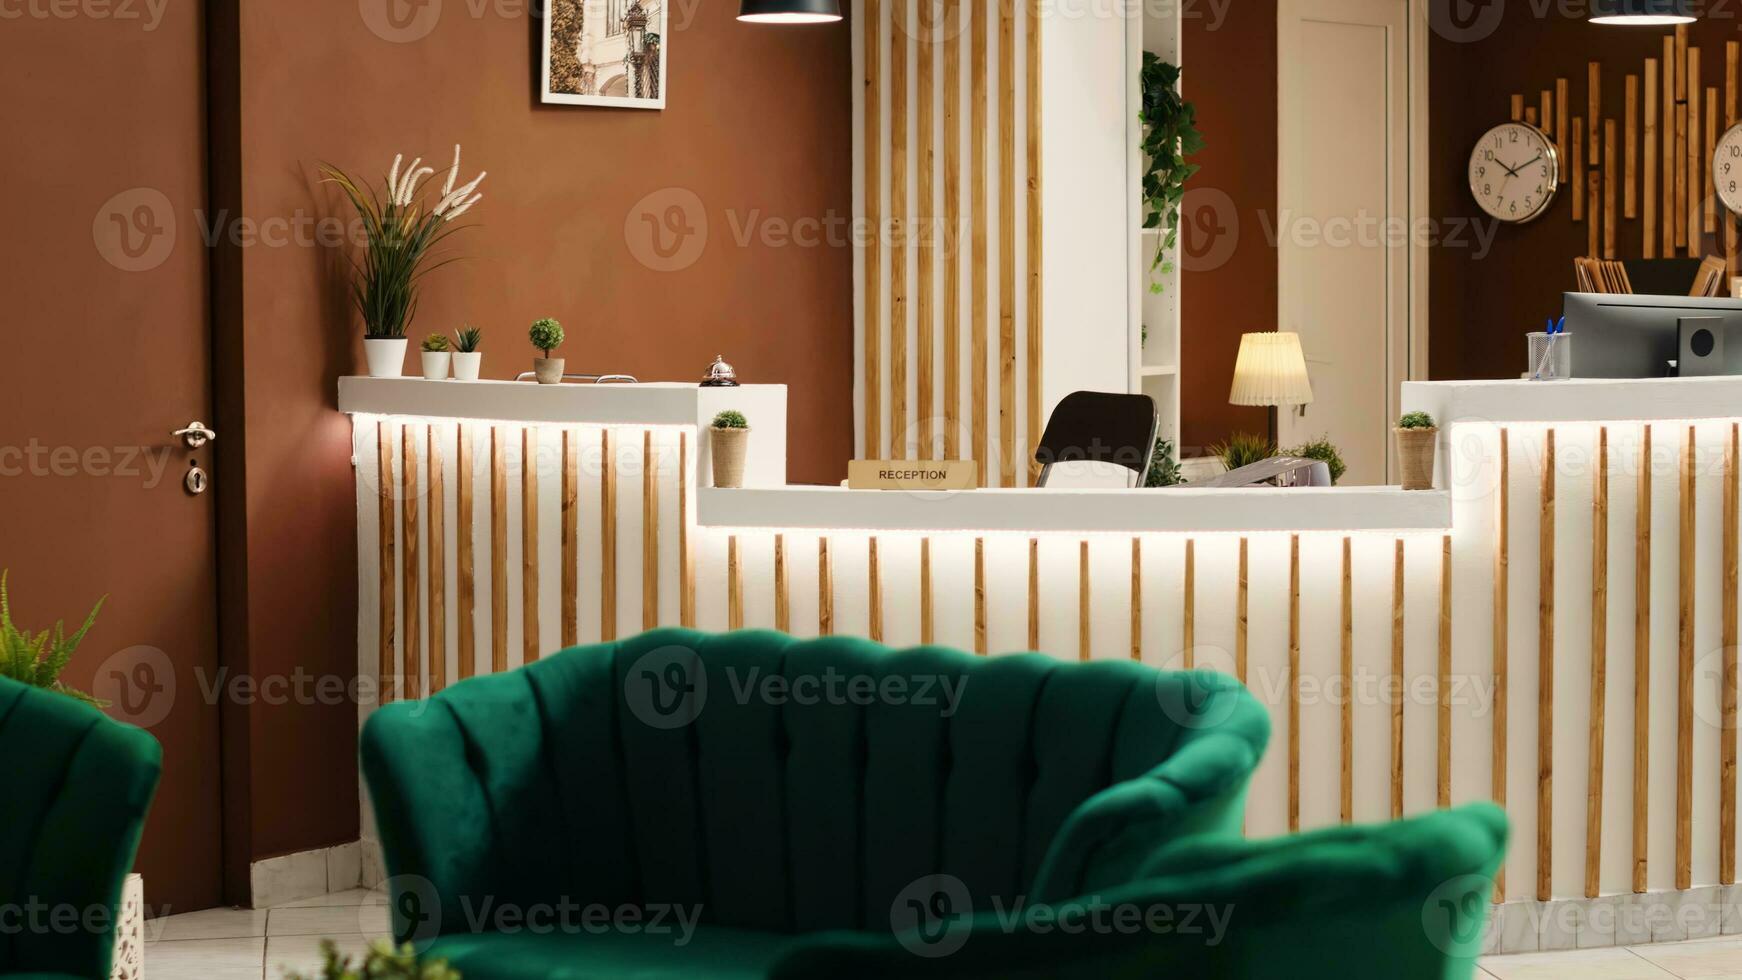 stilvoll vornehm Begrüßung rustikal Resort Empfangshalle Innere gefüllt mit Grün gemütlich luxuriös Stühle und Sofa, warten zum Besucher. leeren Hotel Rezeption Schreibtisch bereit zum ankommen Gäste foto